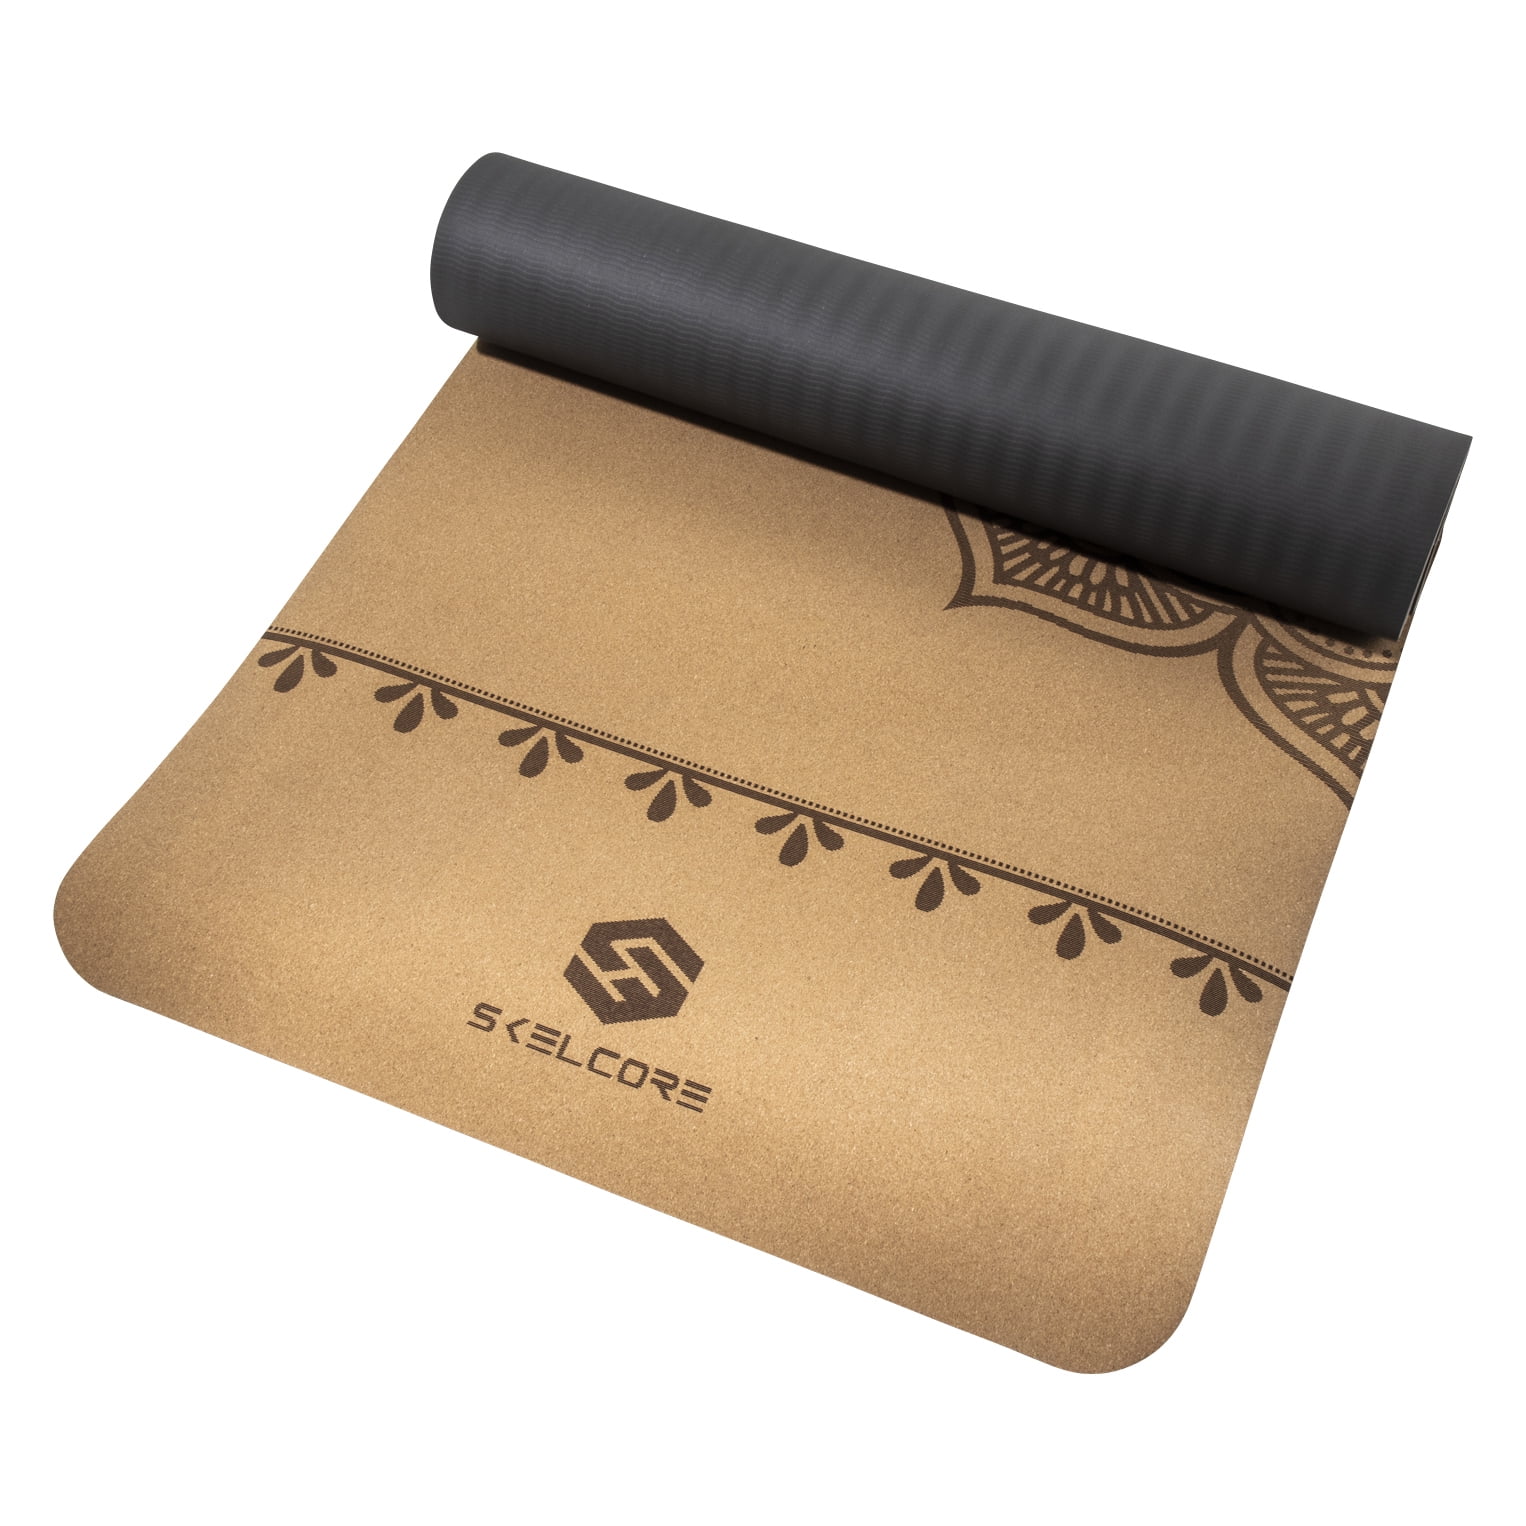 Skelcore 4mm Luxury Cork Yoga Mat, Non-Slip Exercise Mat 